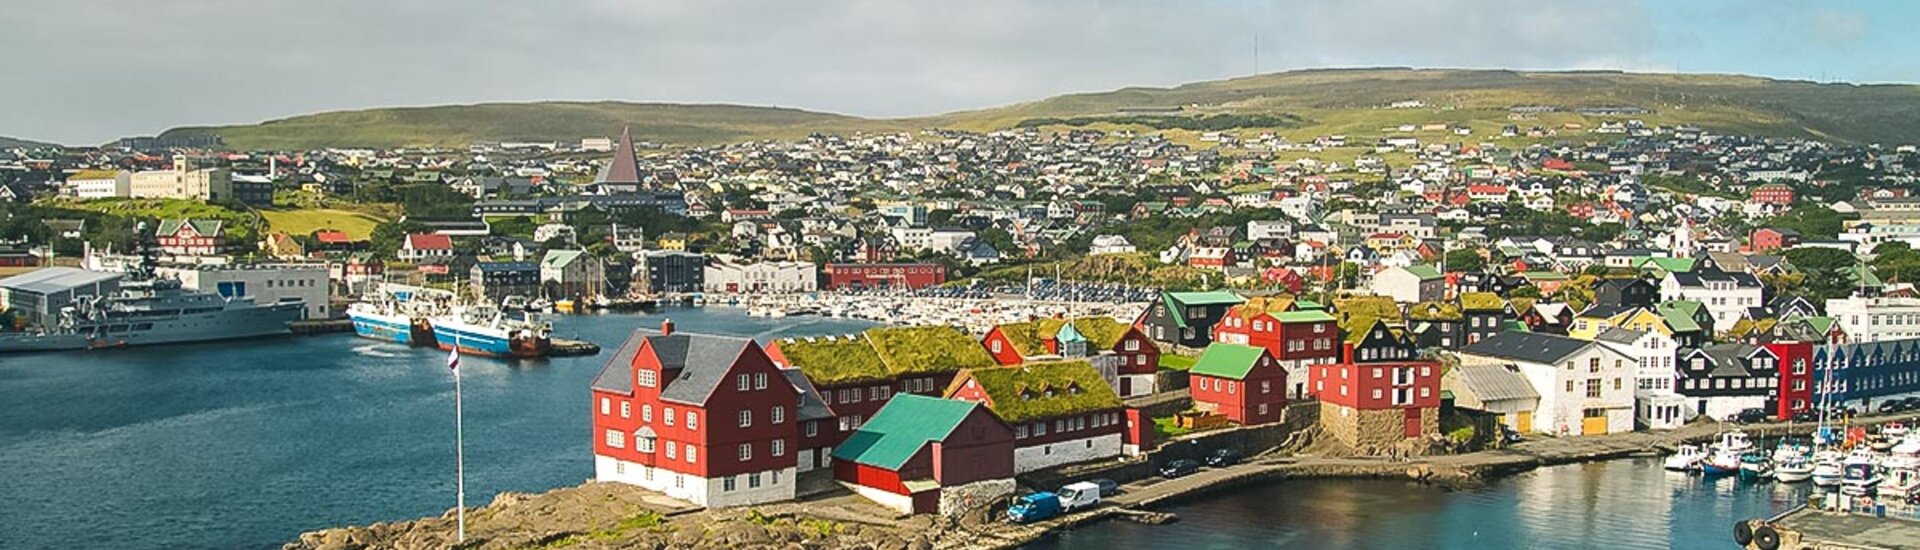 Blick auf Torshavn